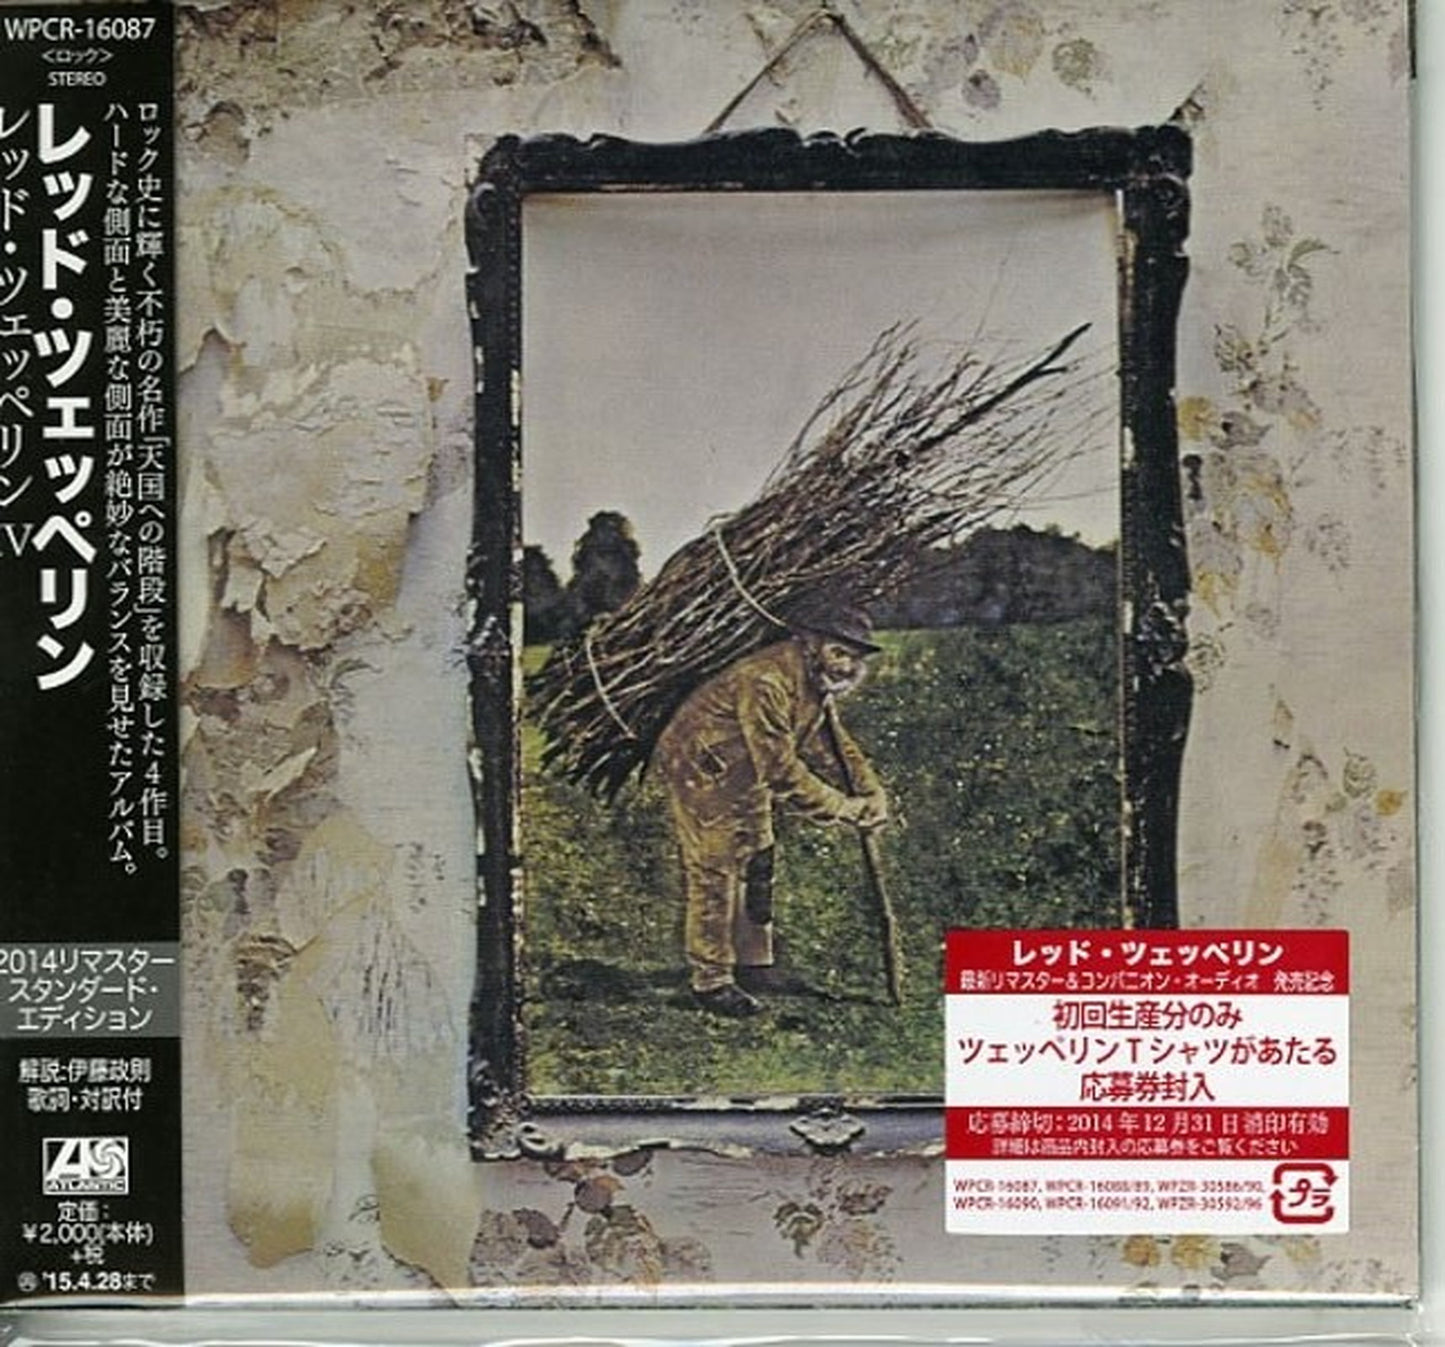 Led Zeppelin - Led Zeppelin Iv Standard Edition - Japan CD